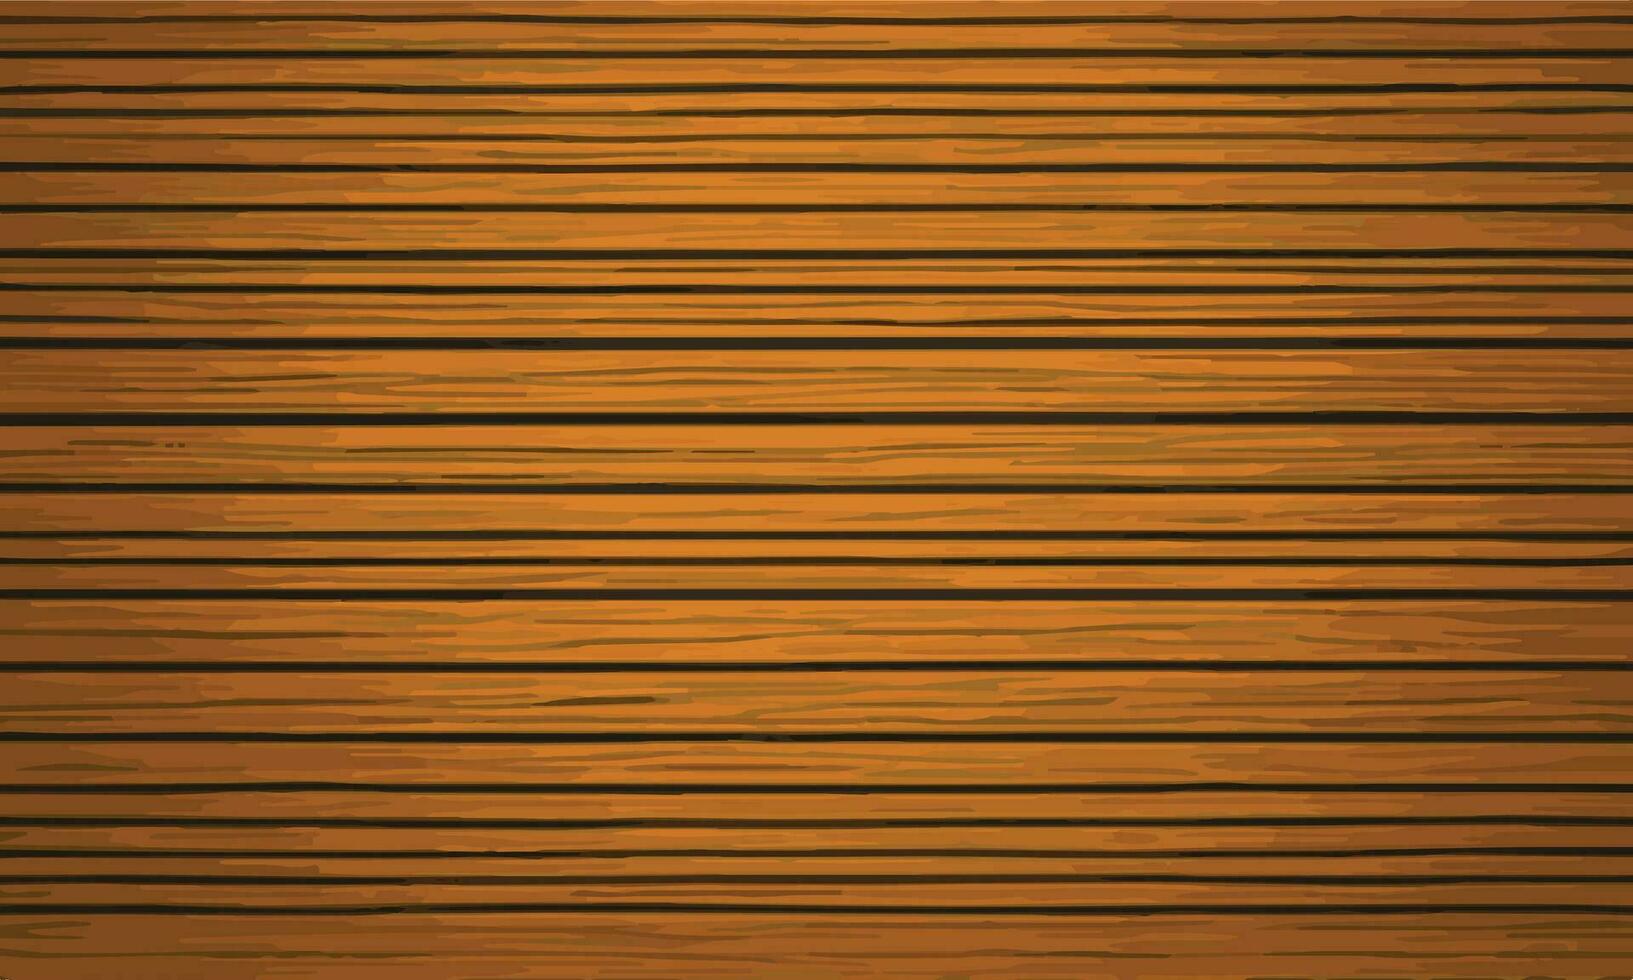 Wooden floor vector illustration background. wooden closeup texture vector